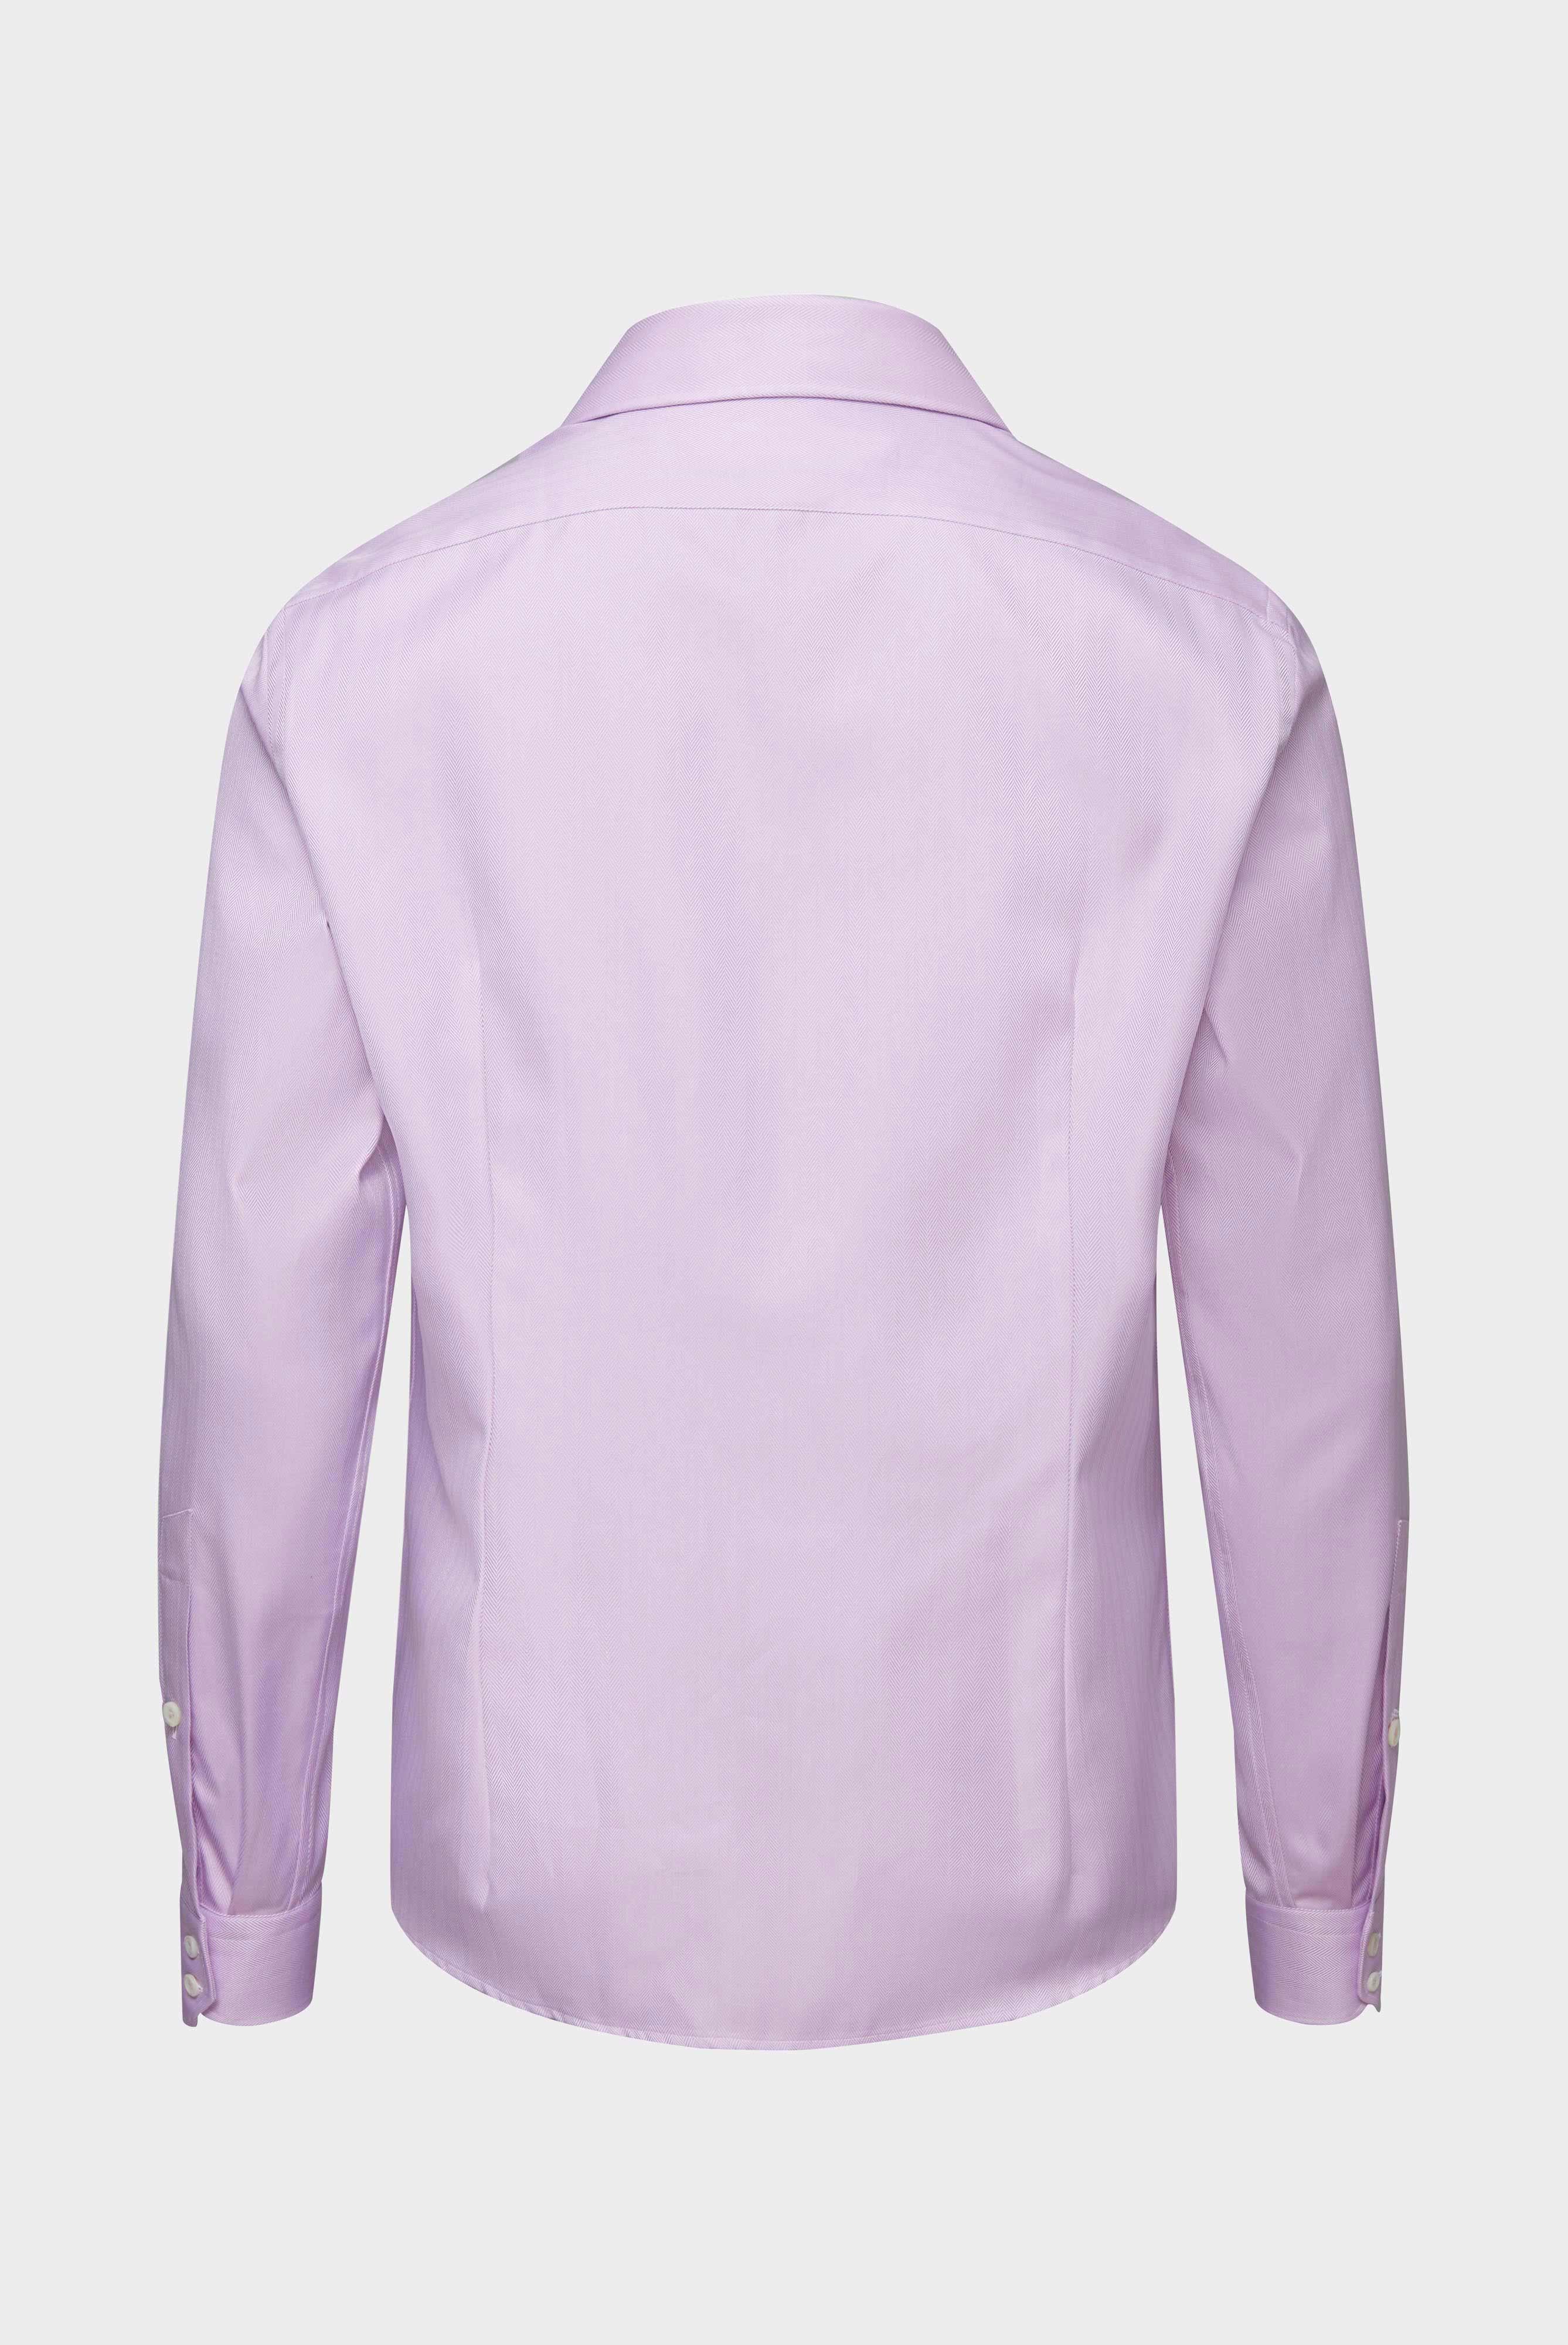 Business Hemden+Twill Hemd mit Fischgrat Tailor Fit+20.2020.AV.102501.610.41